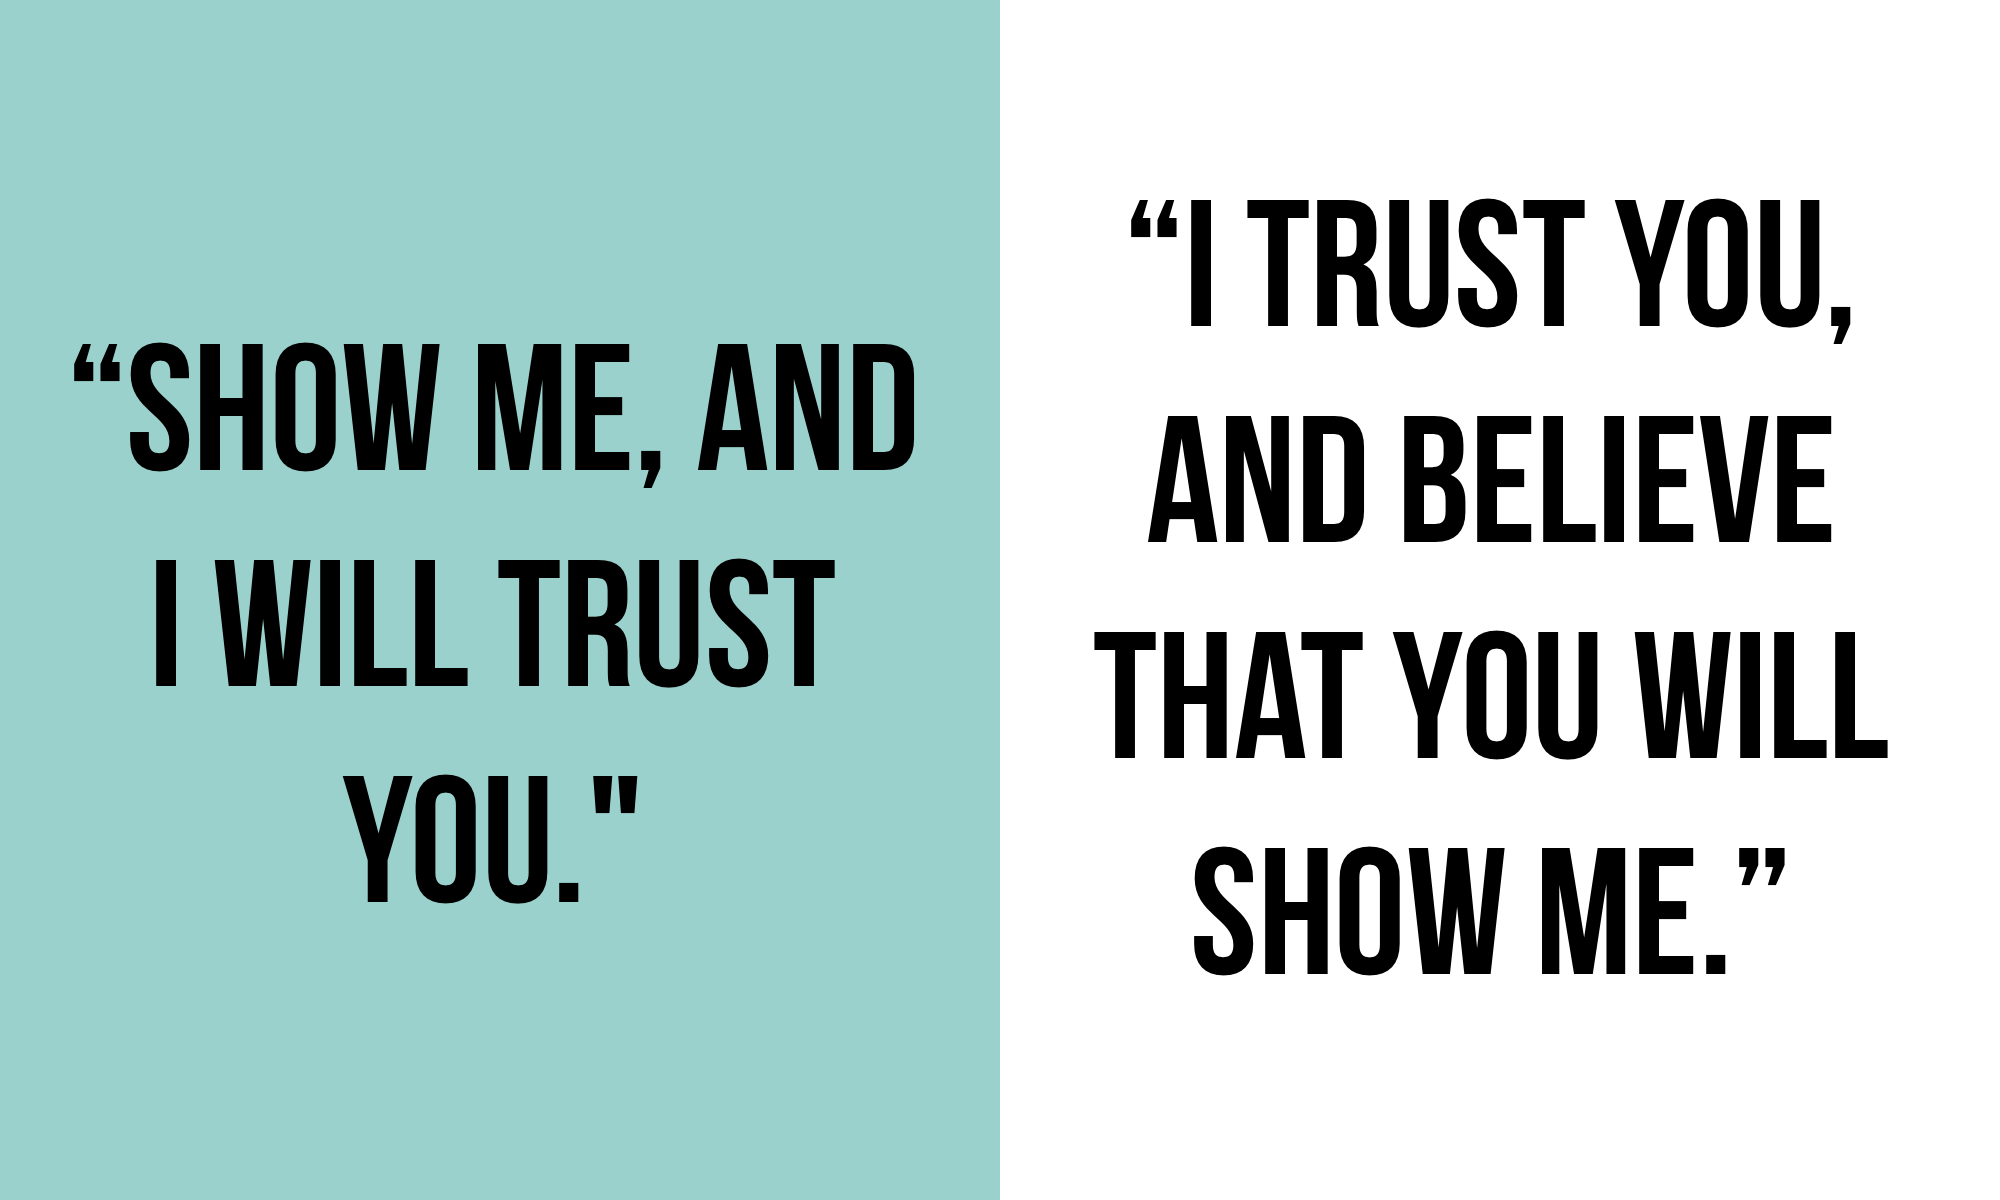 How Do You Trust?